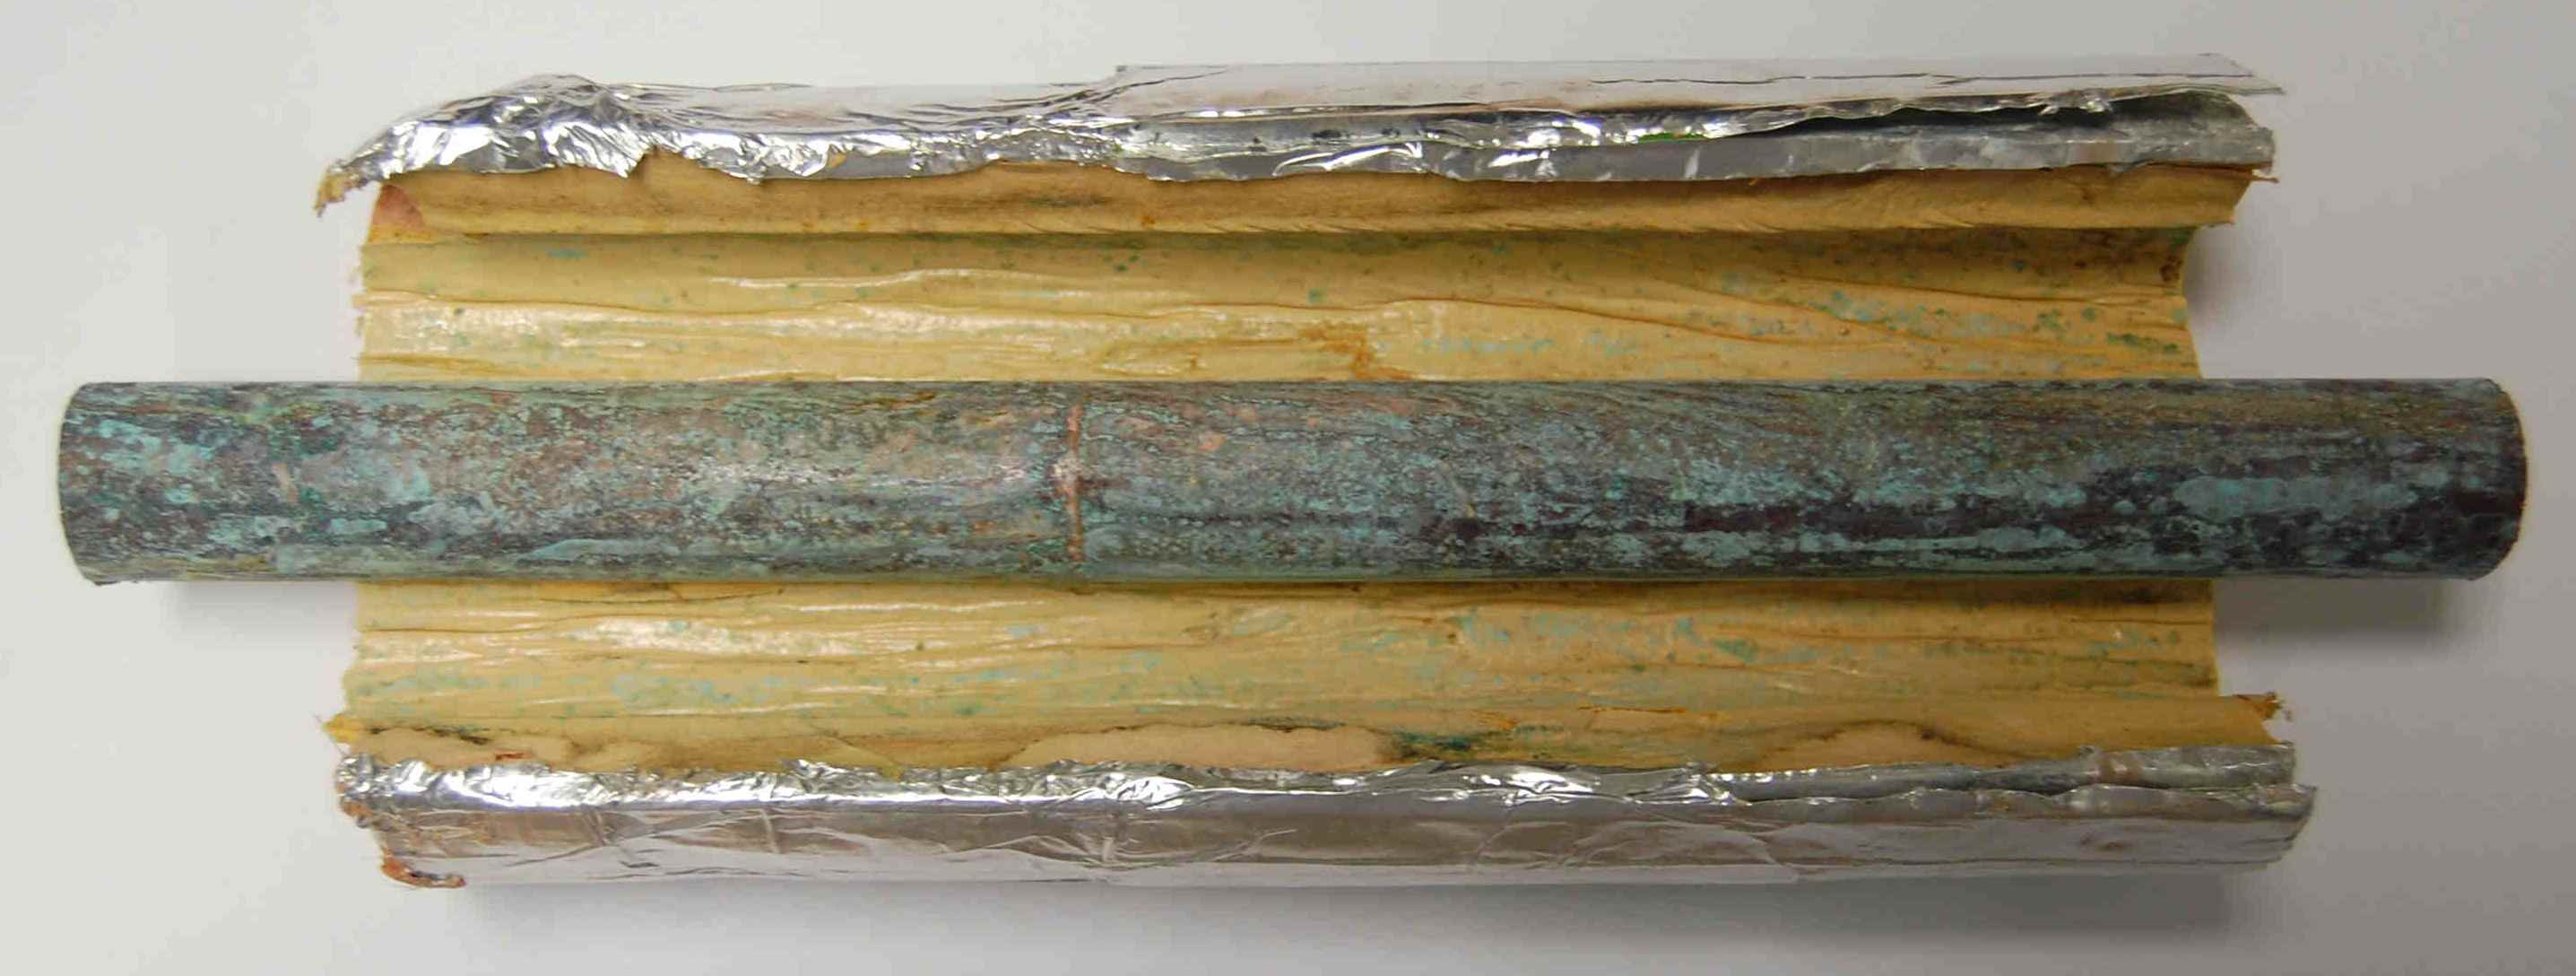 Copper pipe corroded inside phenolic foam